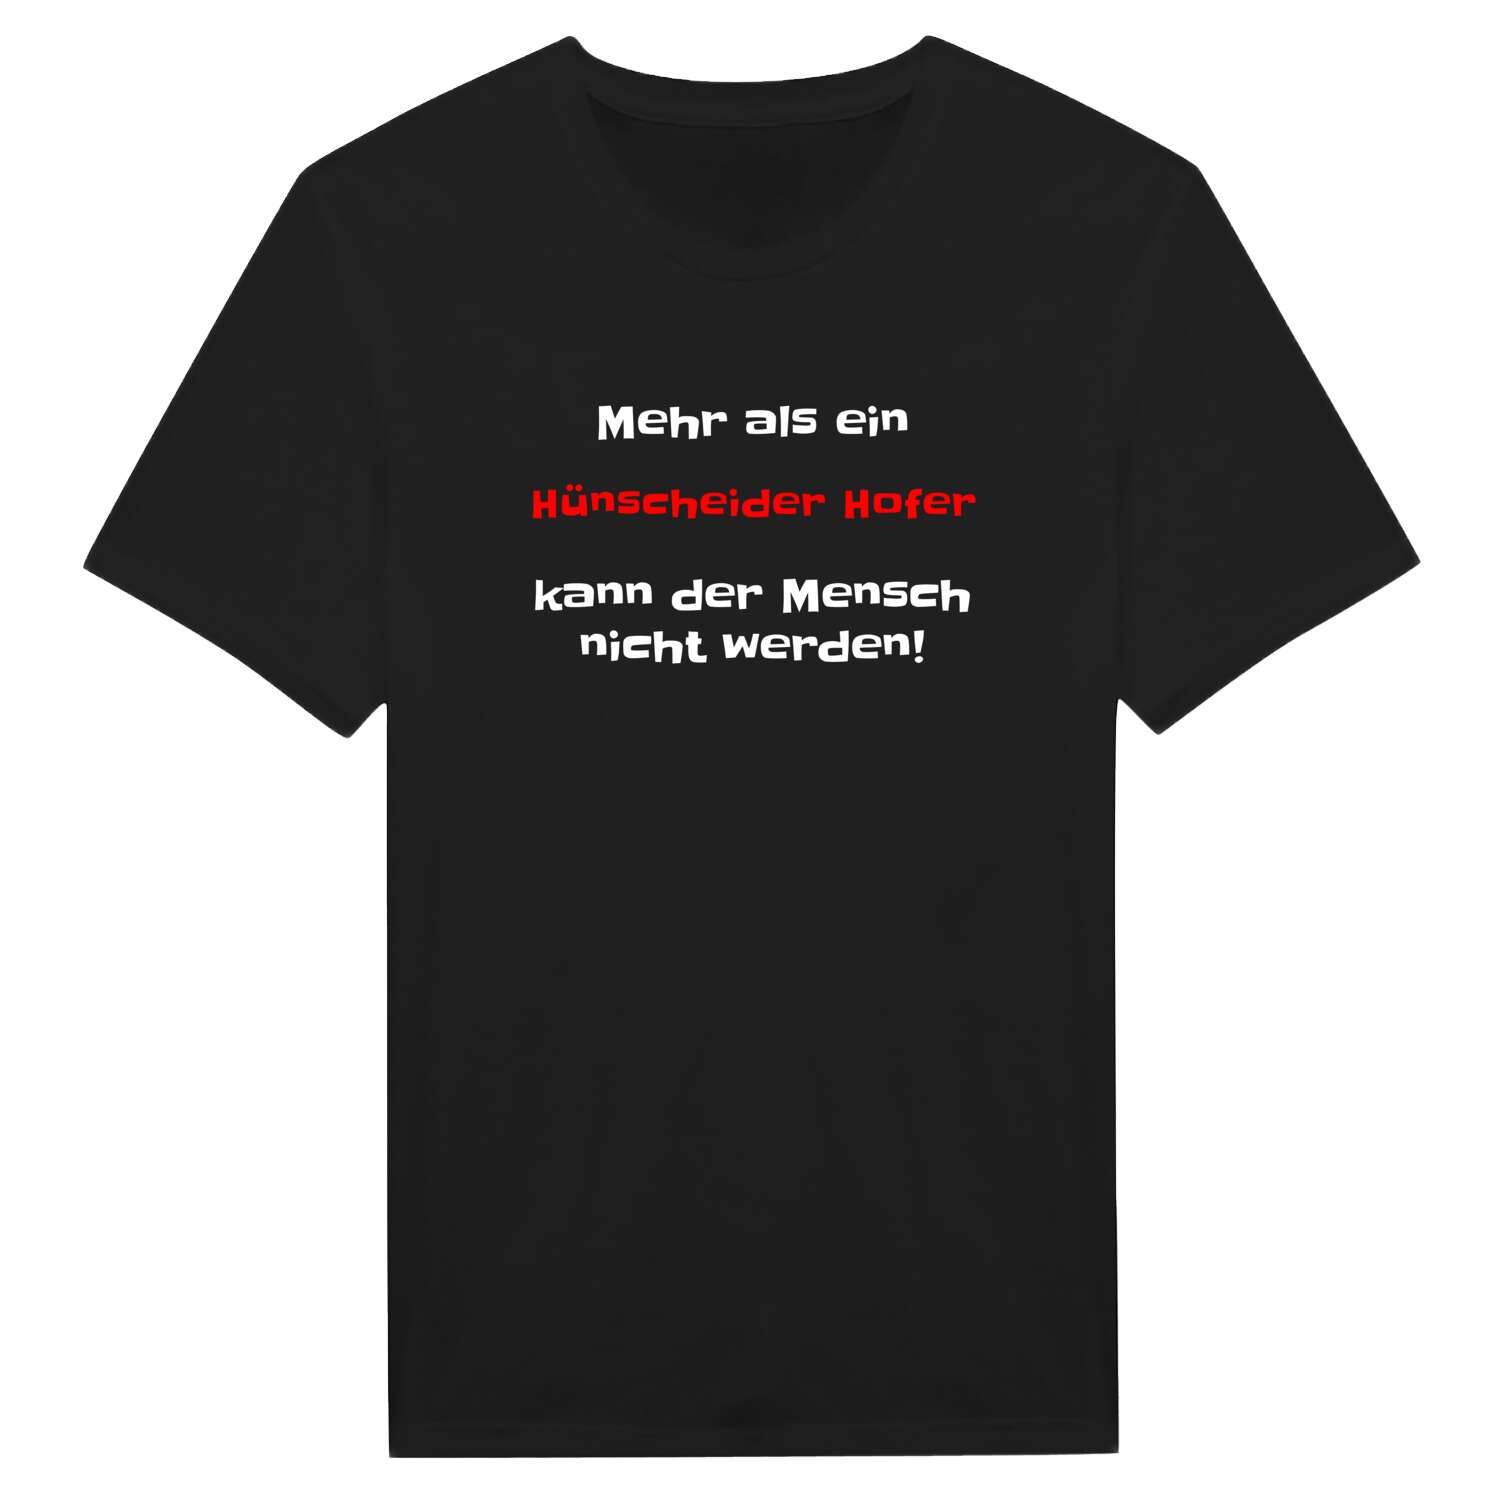 Hünscheider Hof T-Shirt »Mehr als ein«